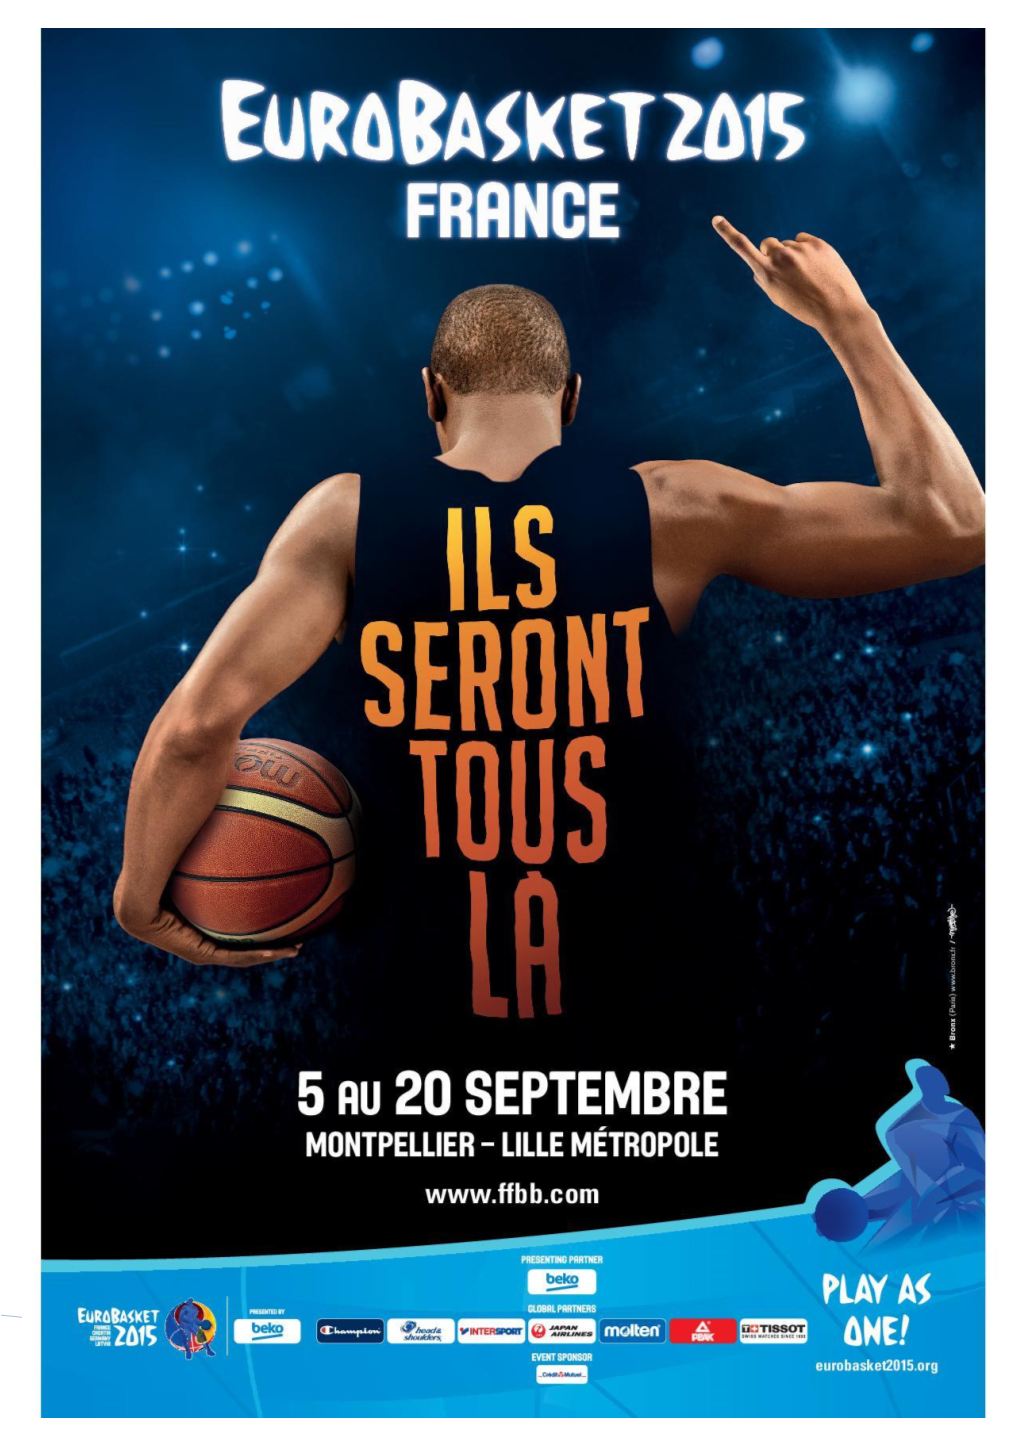 Les Chiffres De L'eurobasket 2015